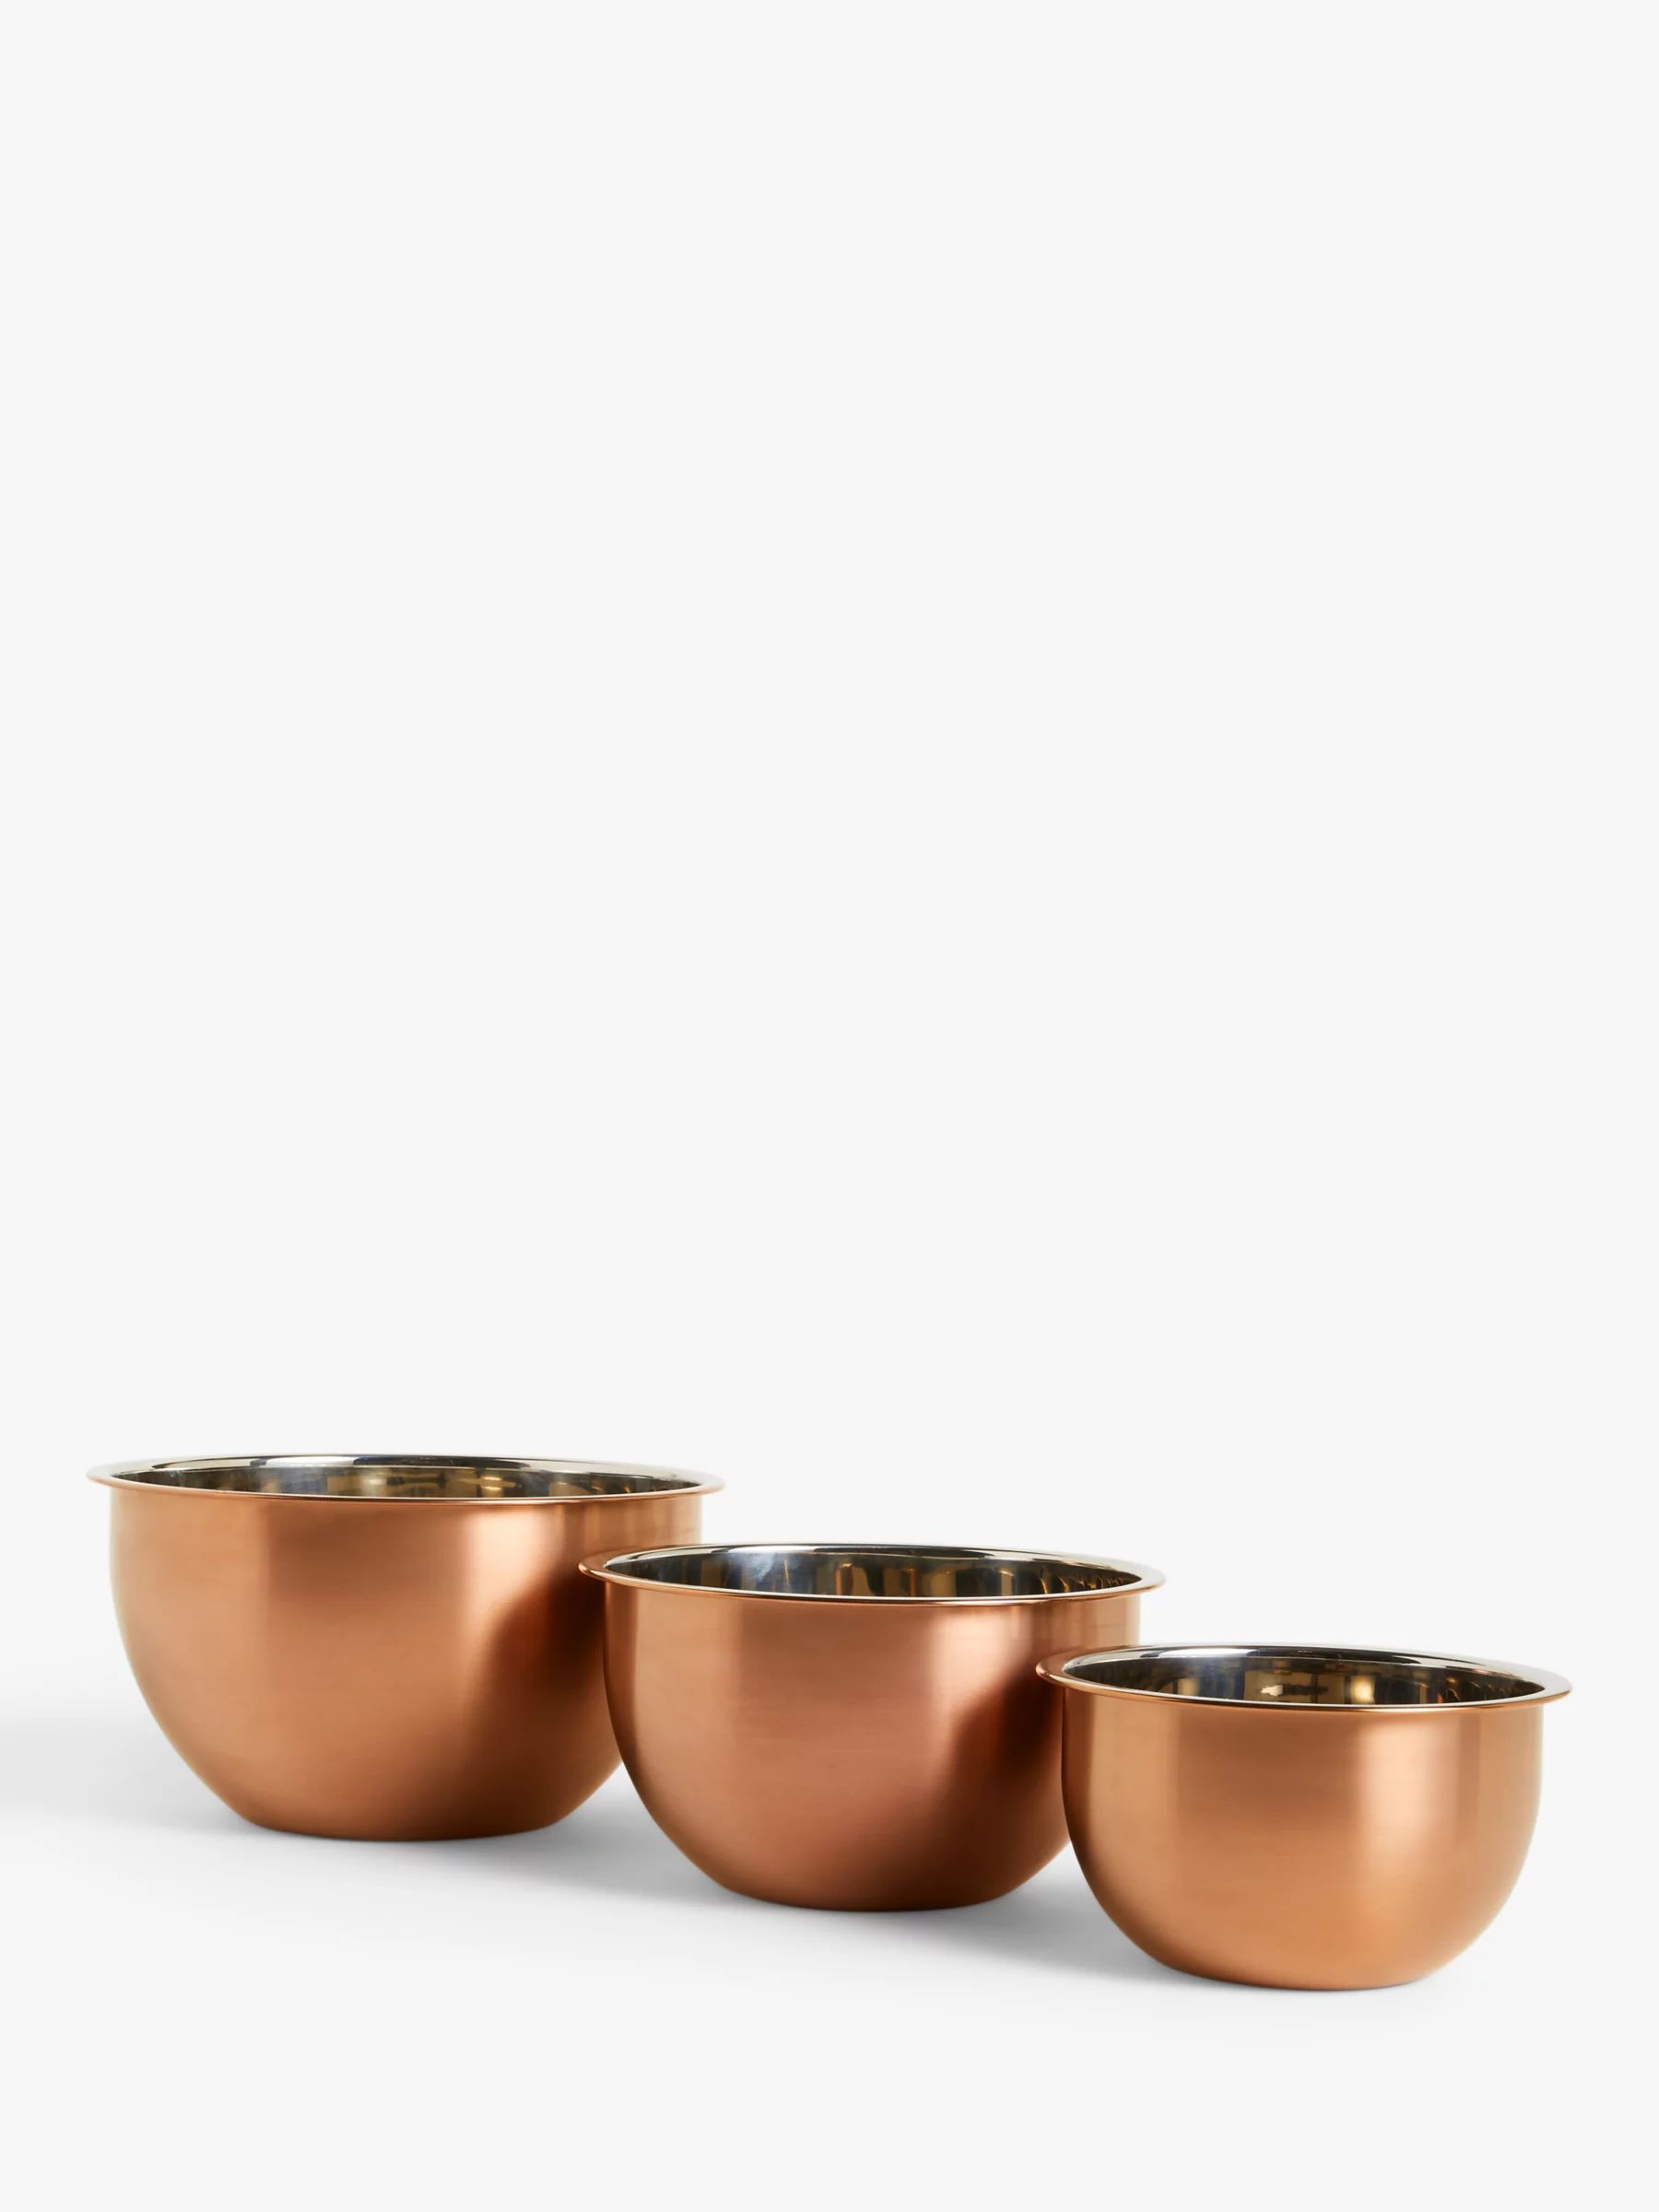 John Lewis Nesting Stainless Steel Mixing Bowls, Set of 3, Copper | John Lewis (UK)